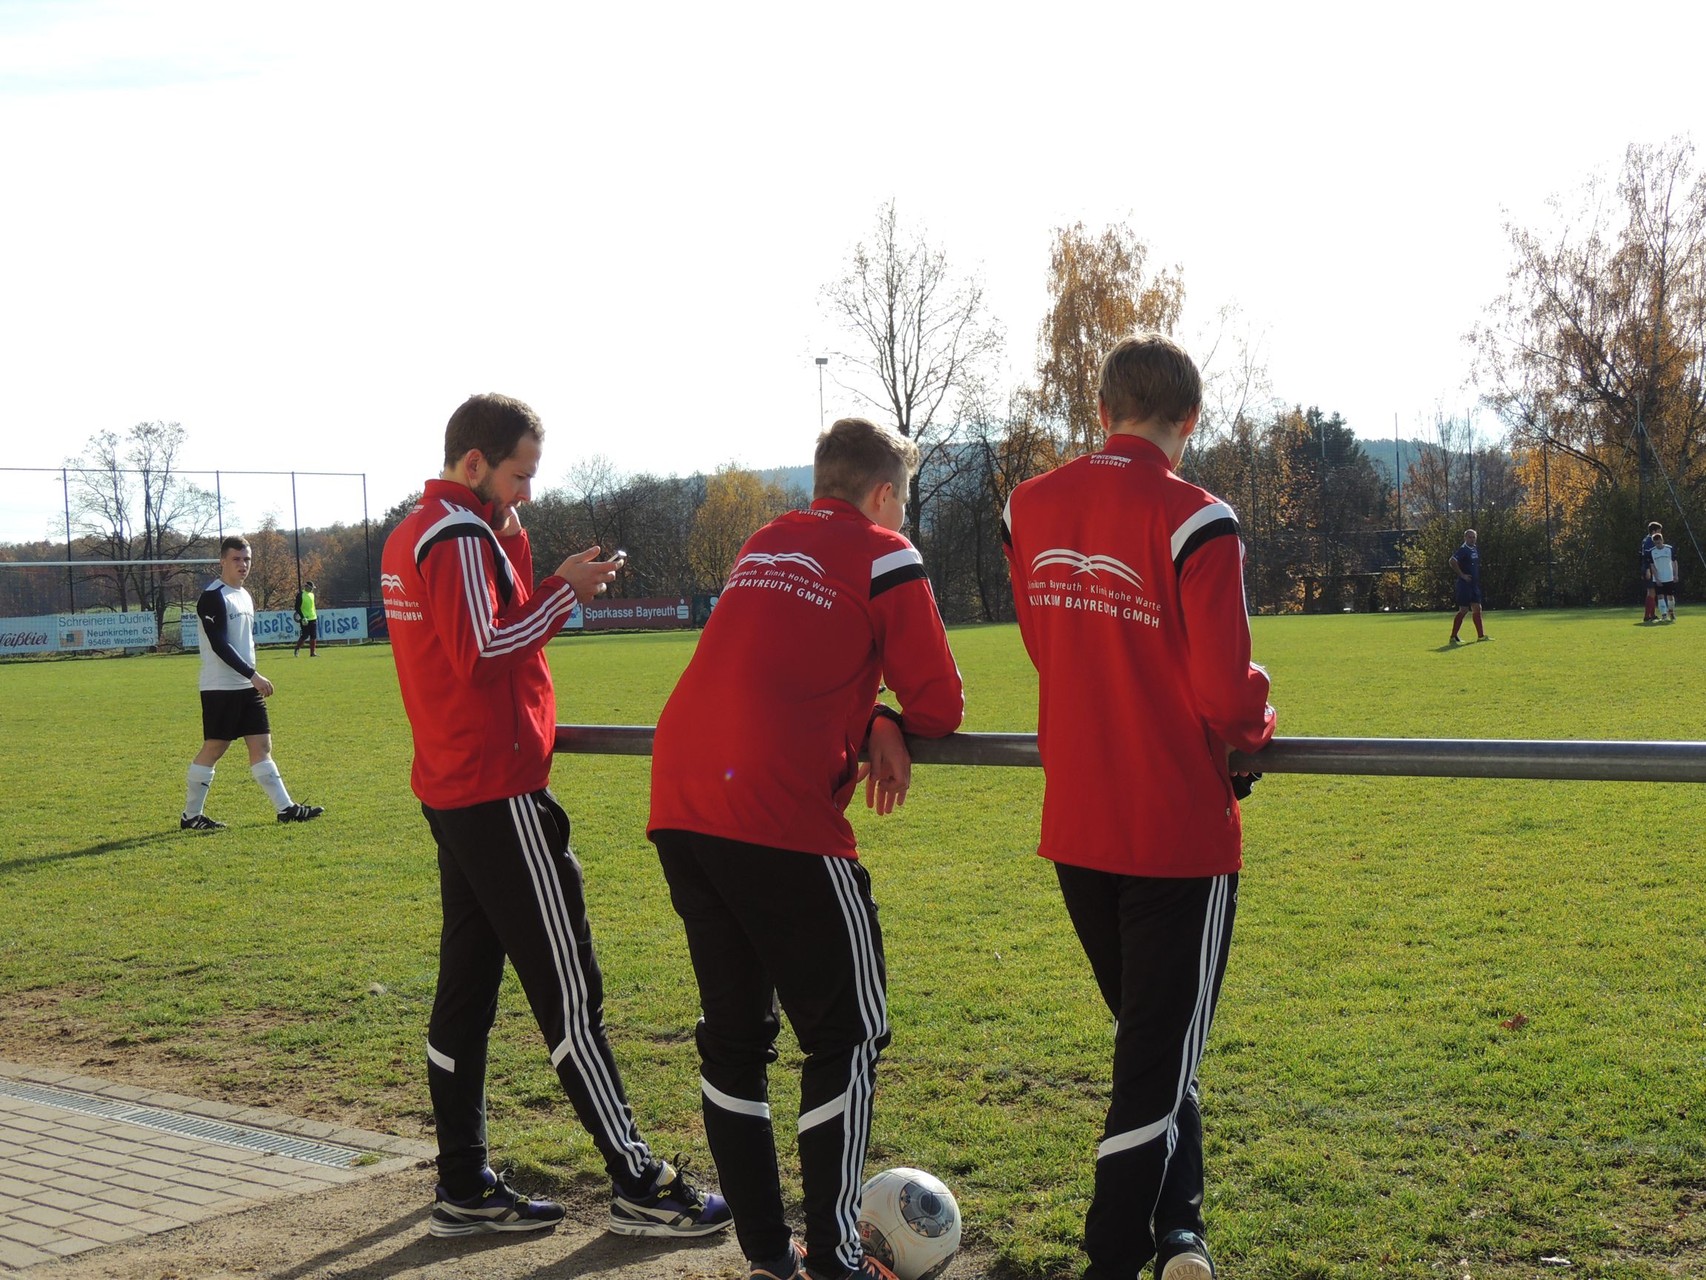 08.11.2015  2. Mannschaft  -  Post SV/Uni Bayreuth II              4:1